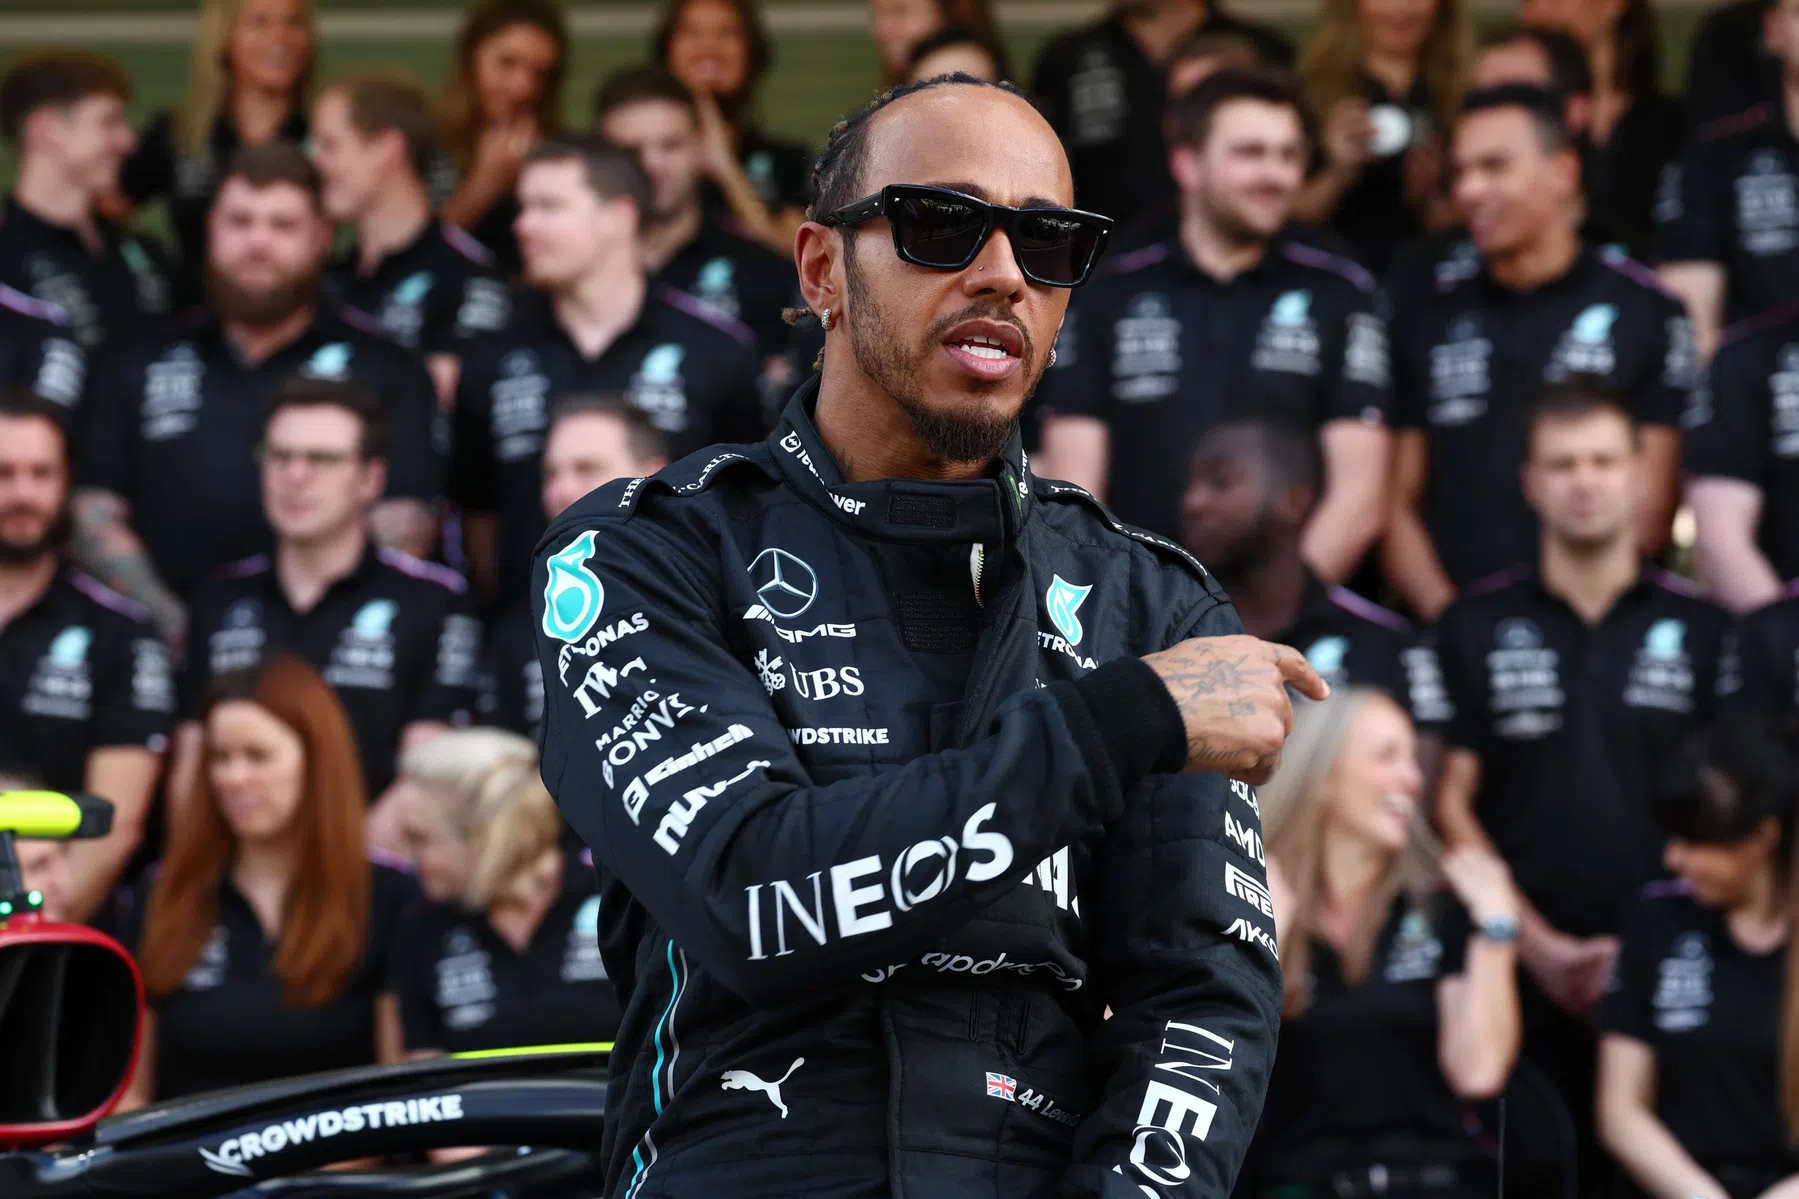 La cláusula del contrato Mercedes de Lewis Hamilton 